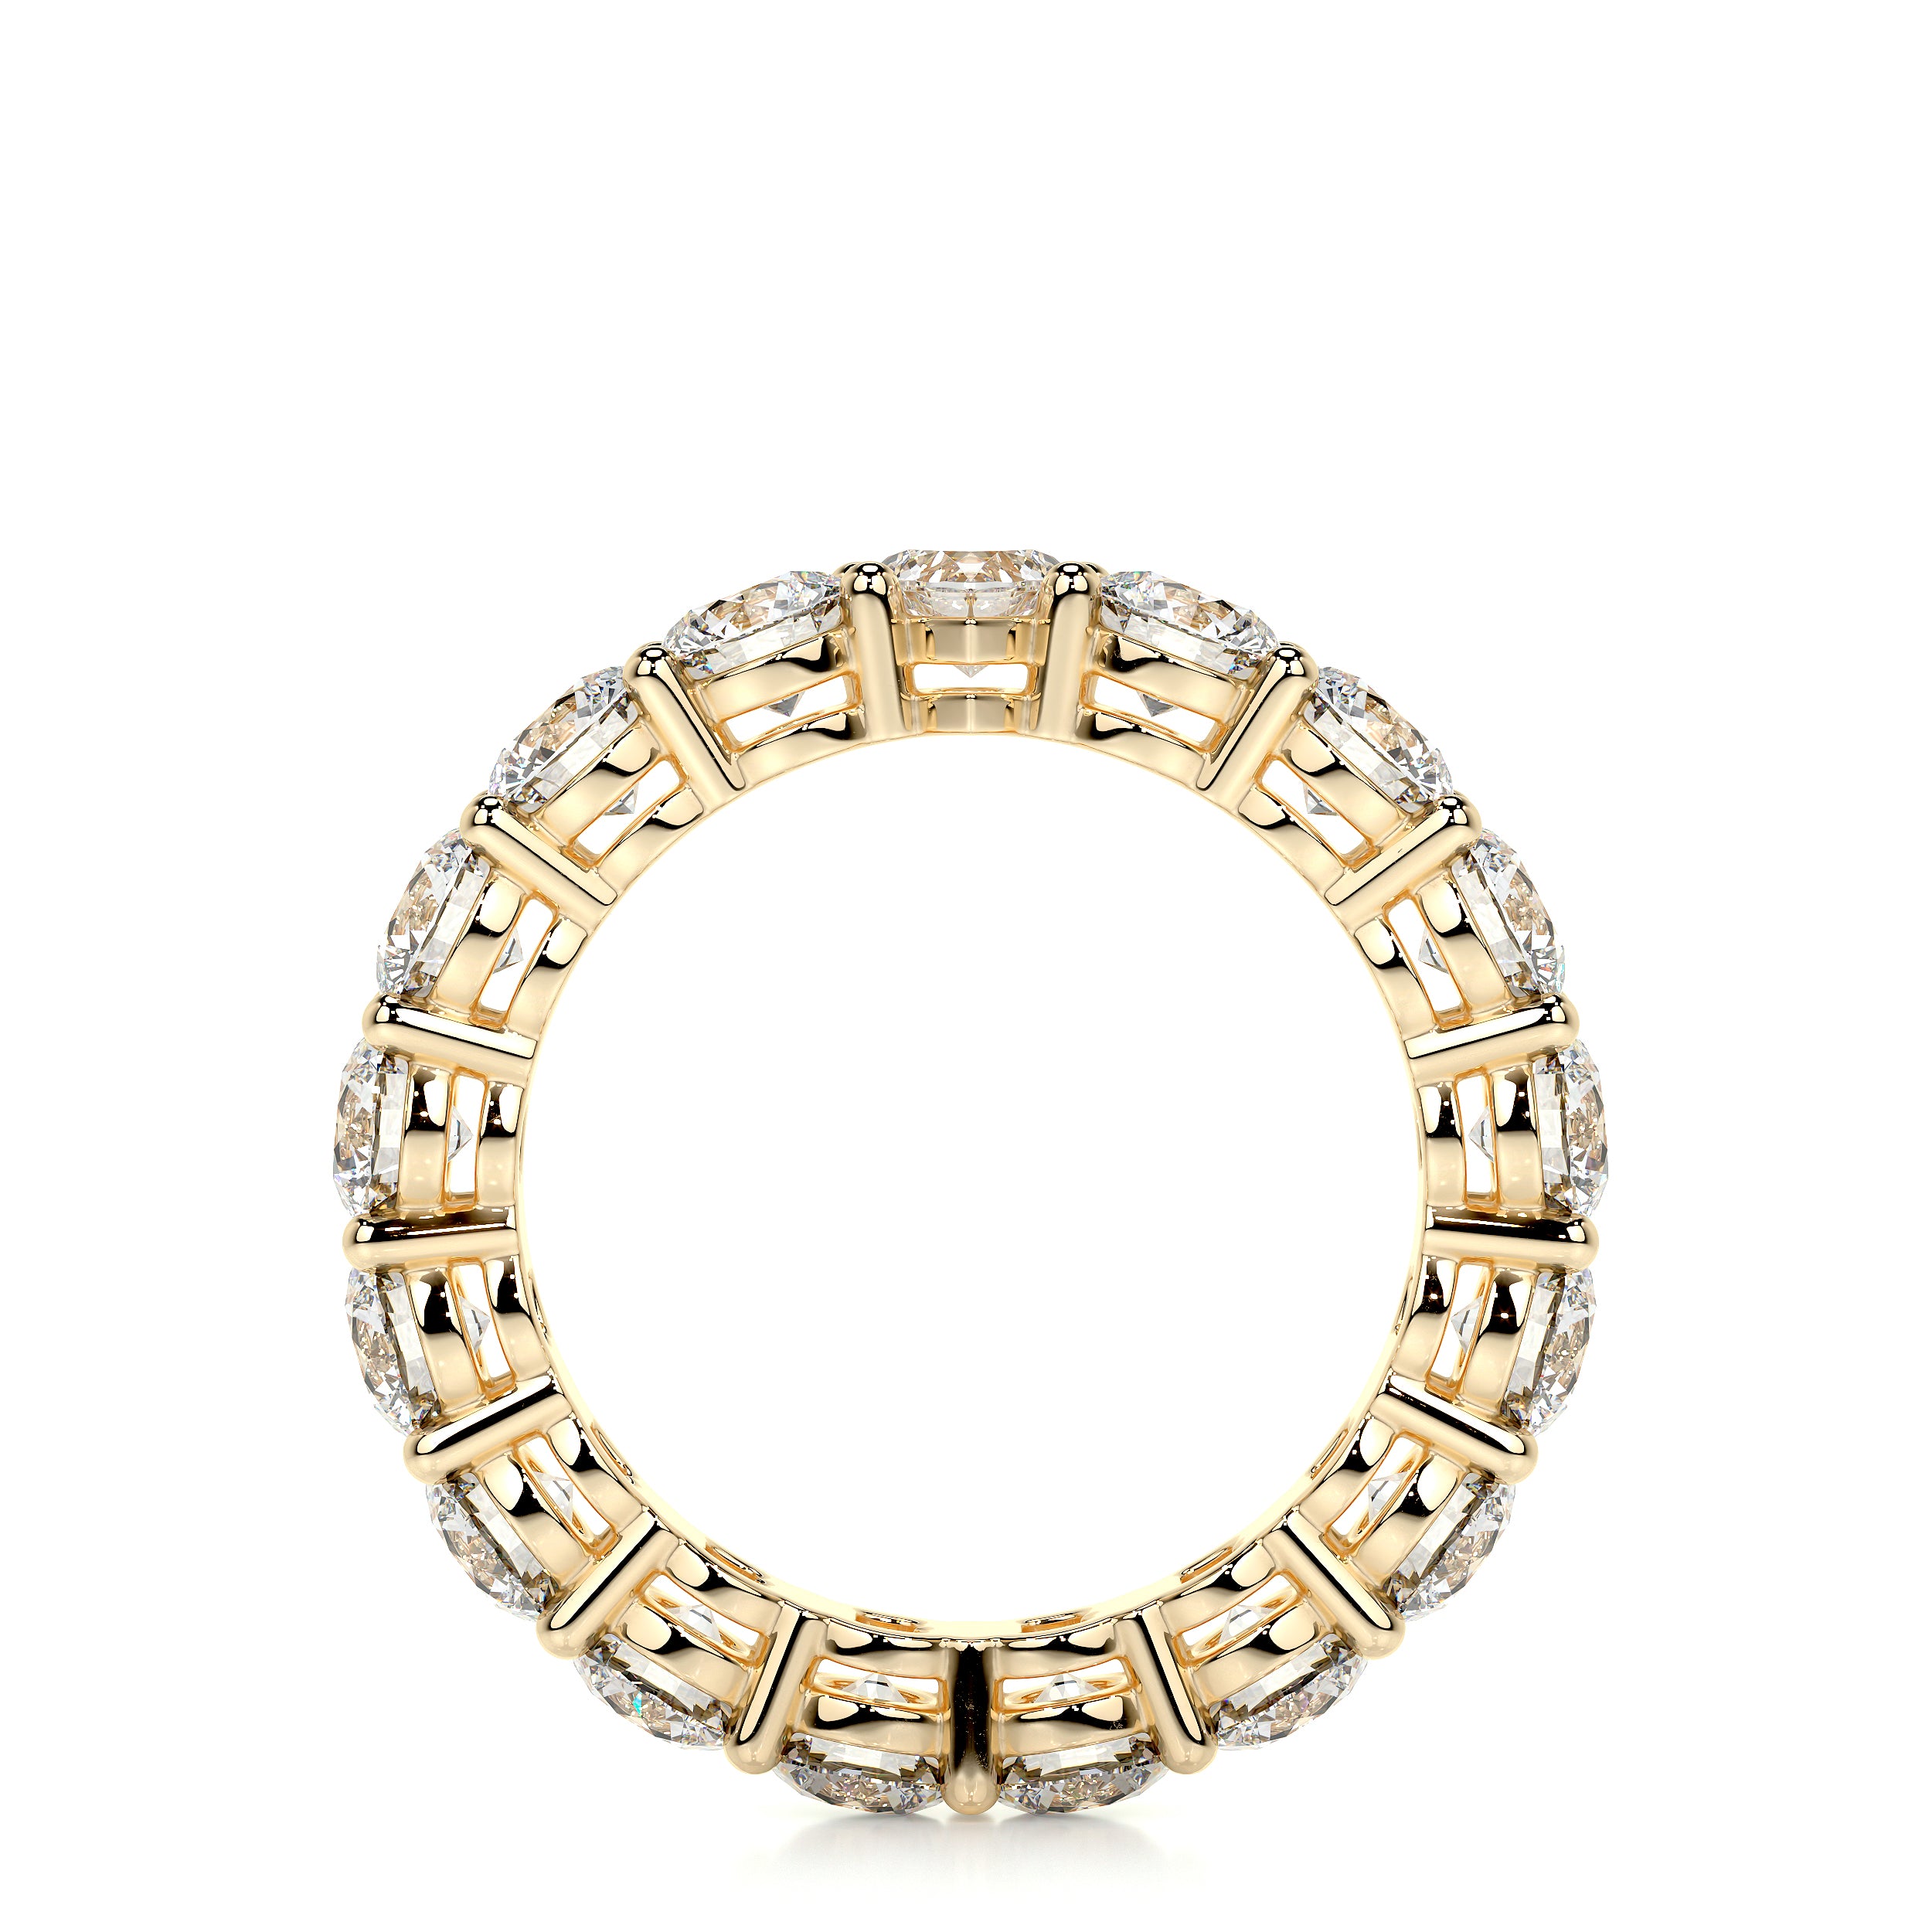 Anne Lab Grown Diamond Wedding Ring   (4 Carat) -18K Yellow Gold